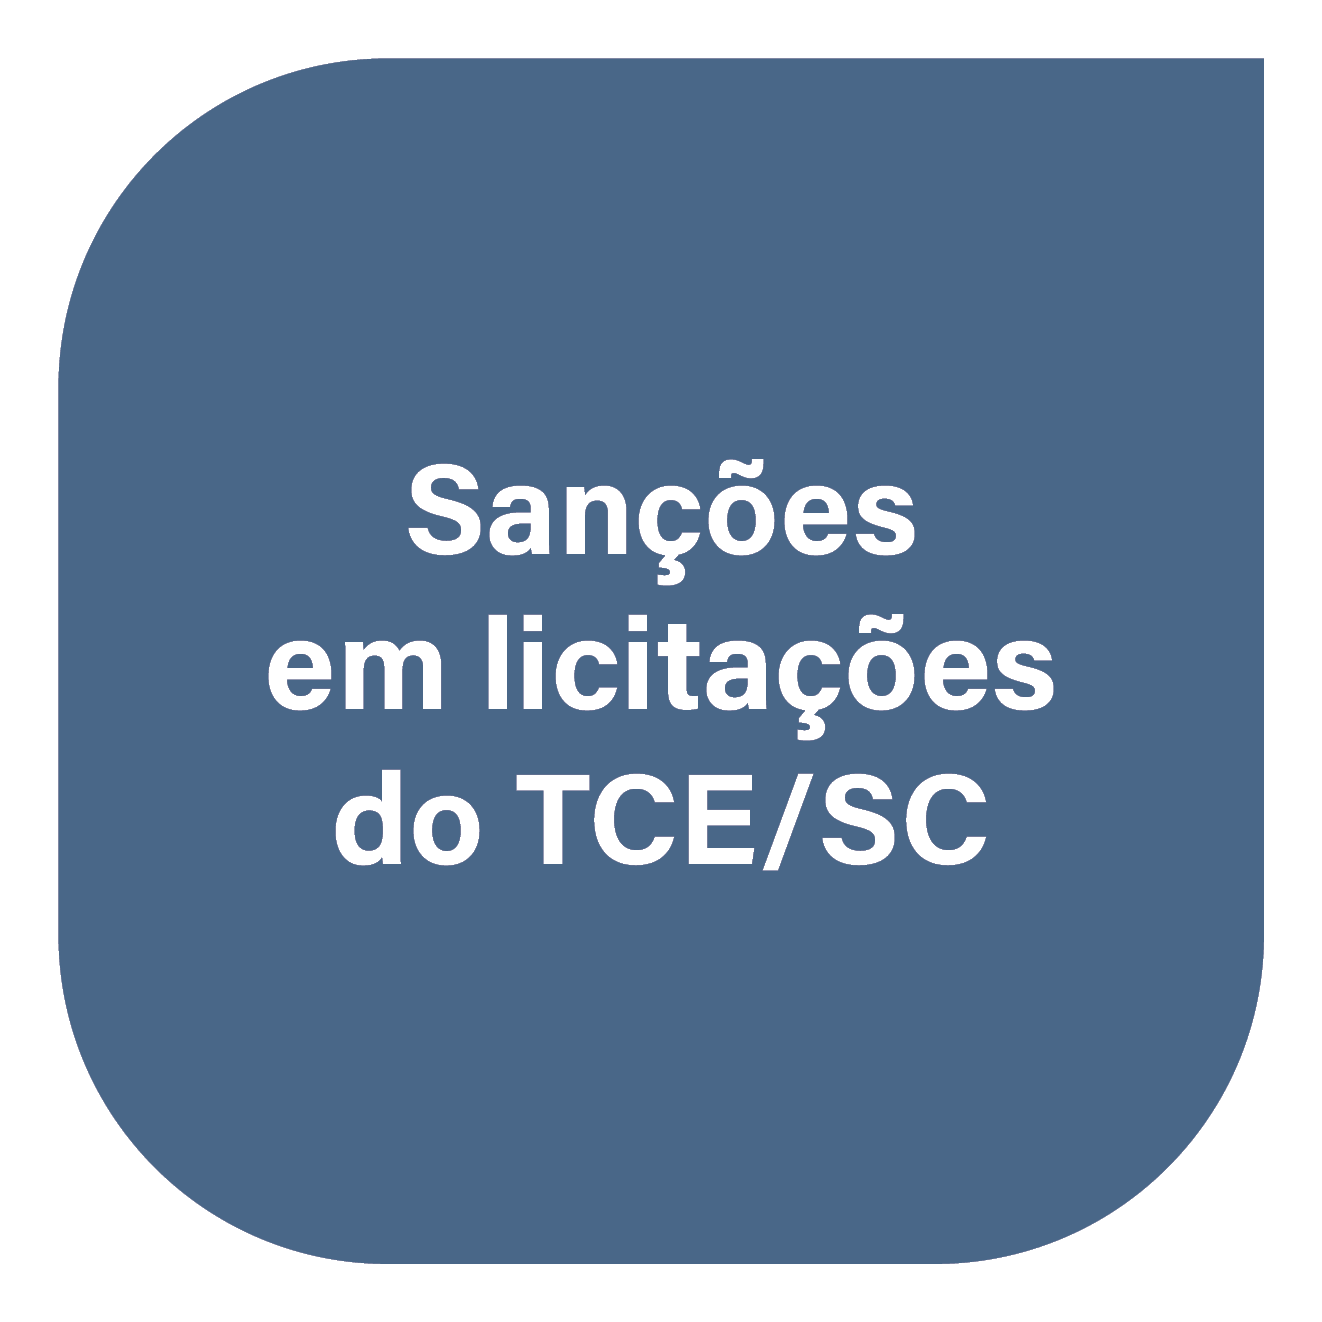 Sanções em licitações do TCE/SC